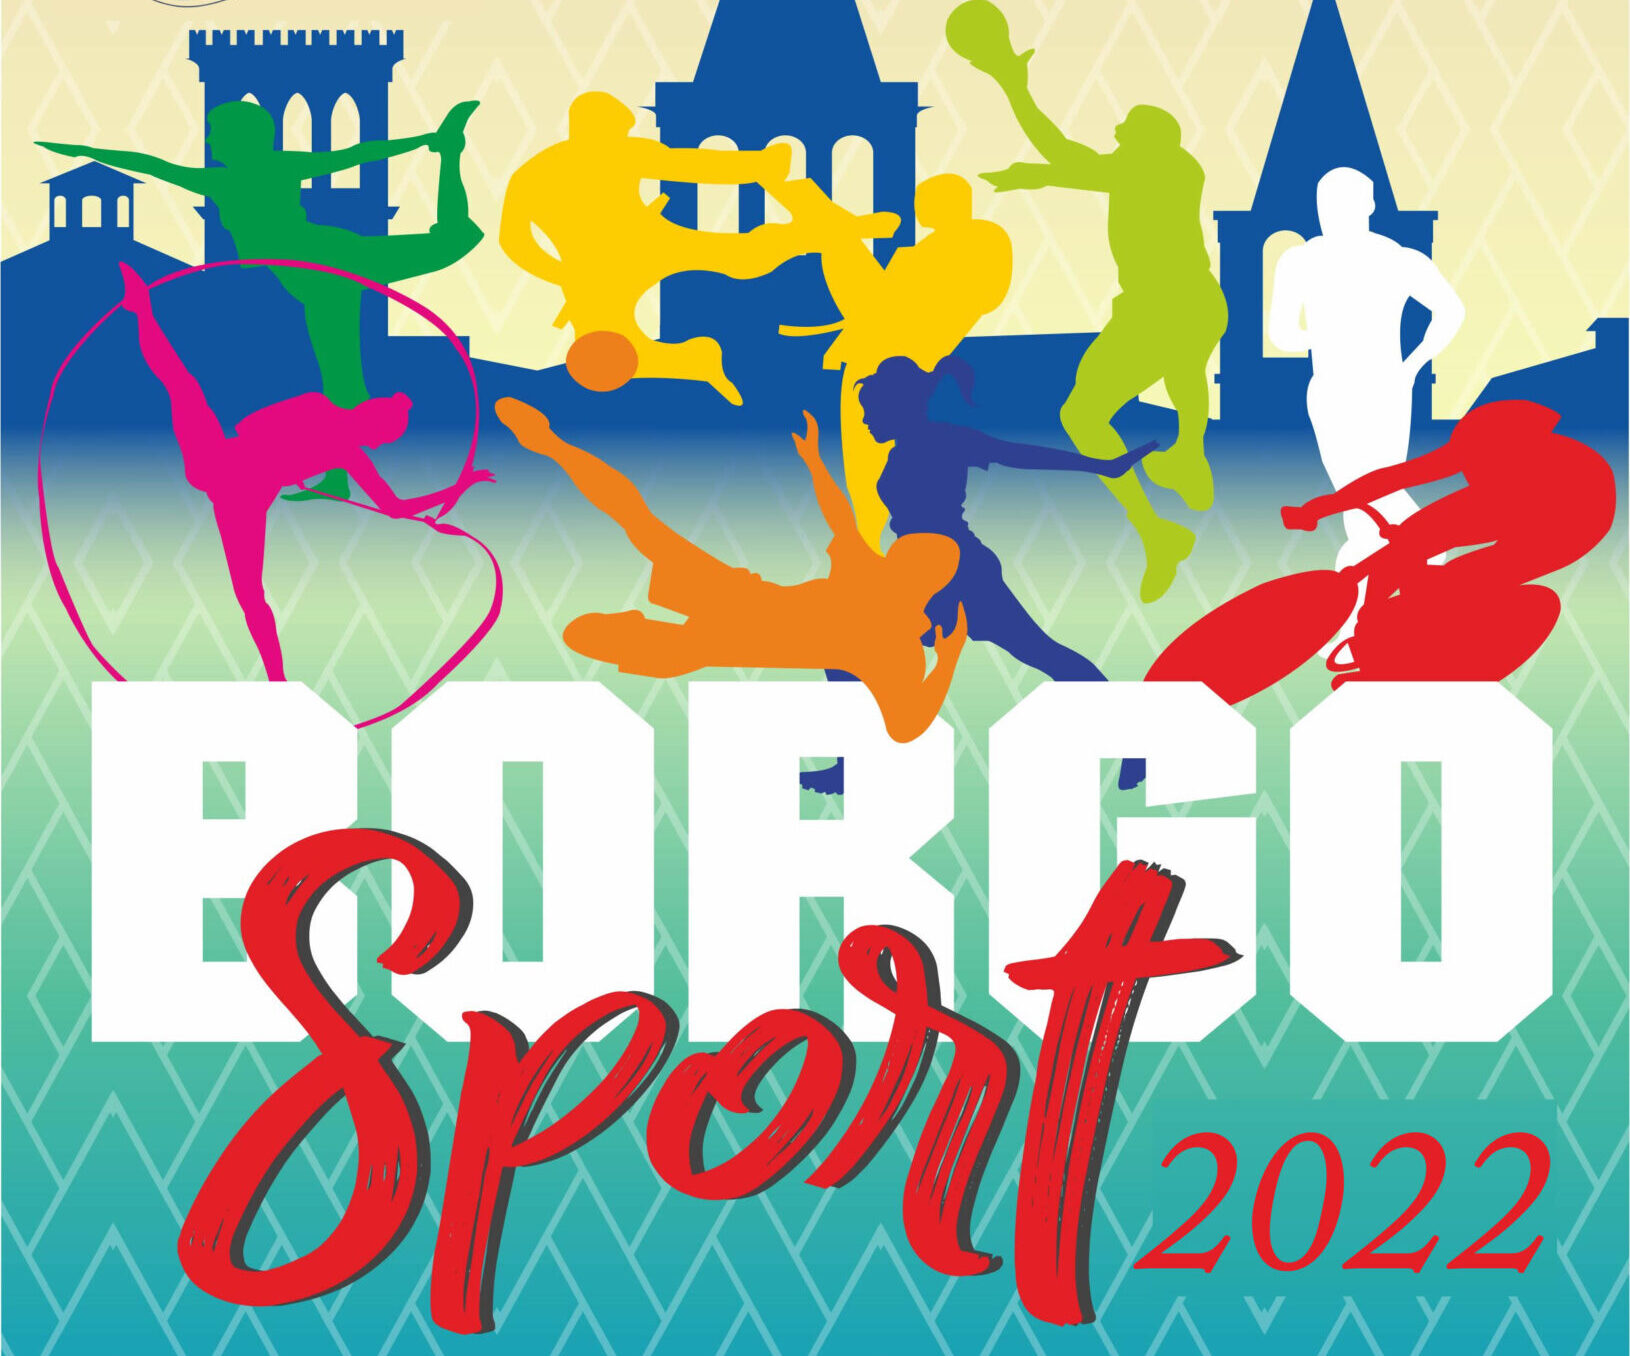 Al via l’edizione 2022 di “Borgosport”